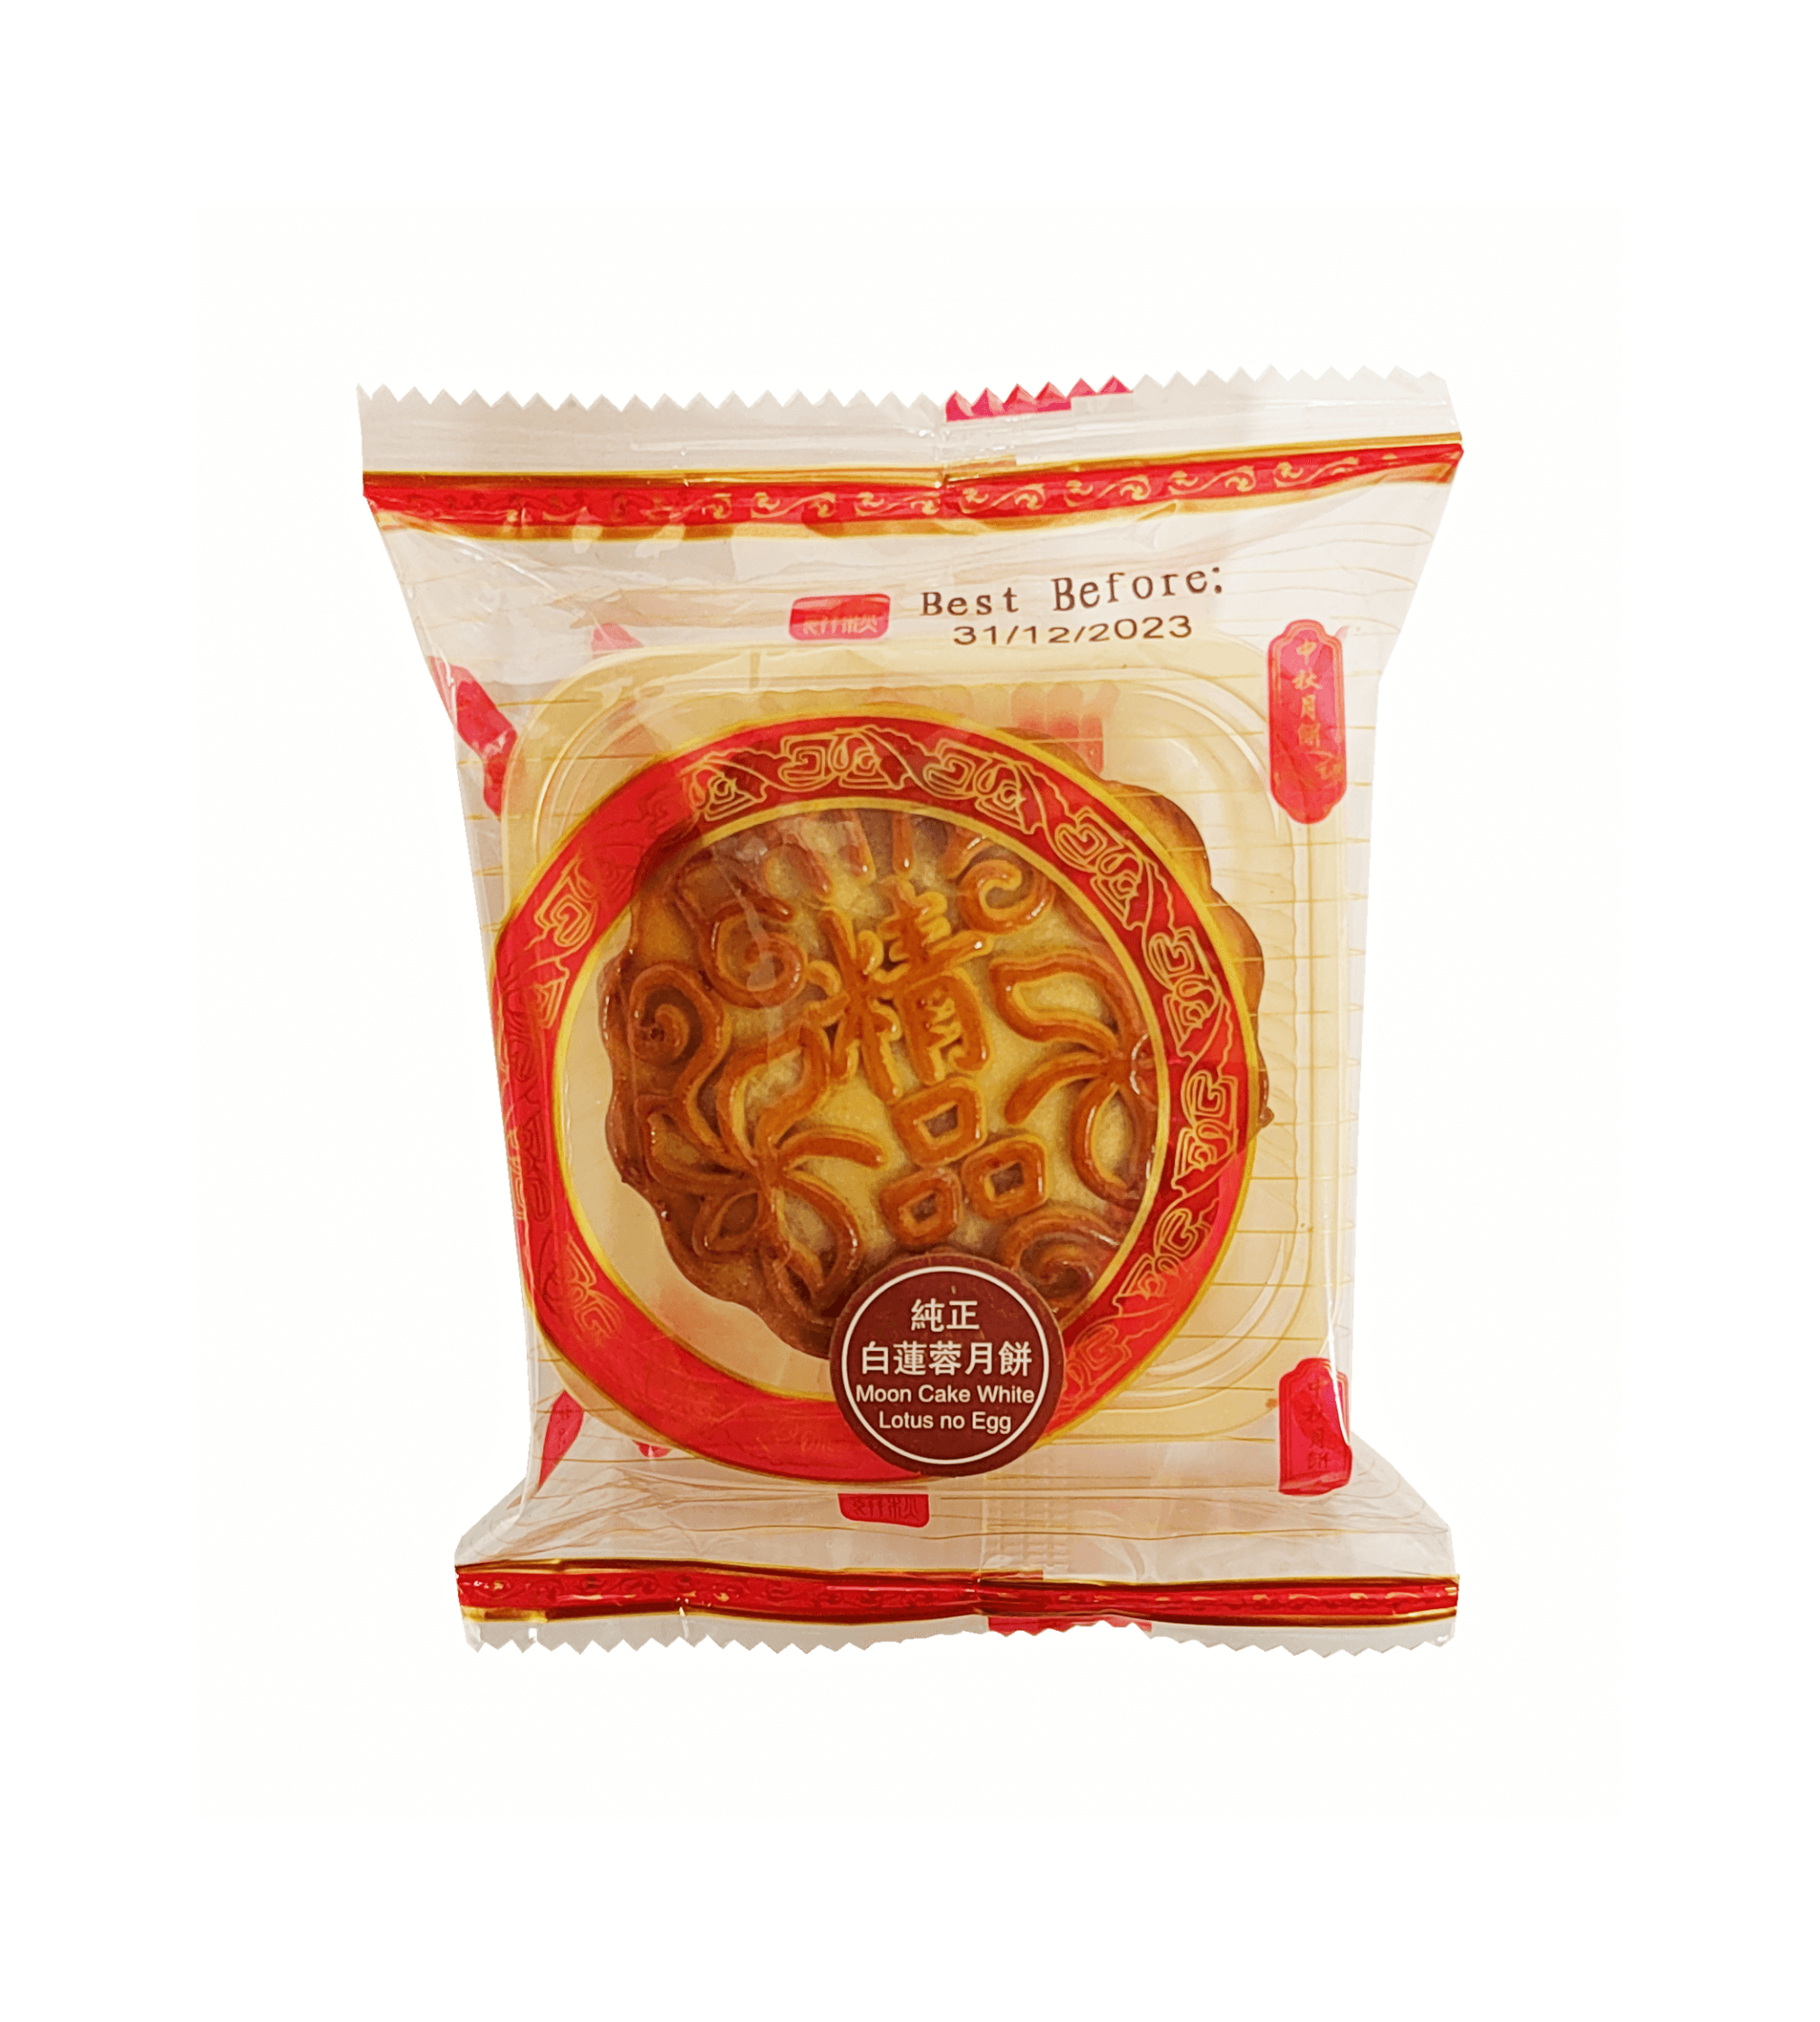 Mooncake With Lotus Pasta Filling 100g - Yue Ban Huang Ting Kin